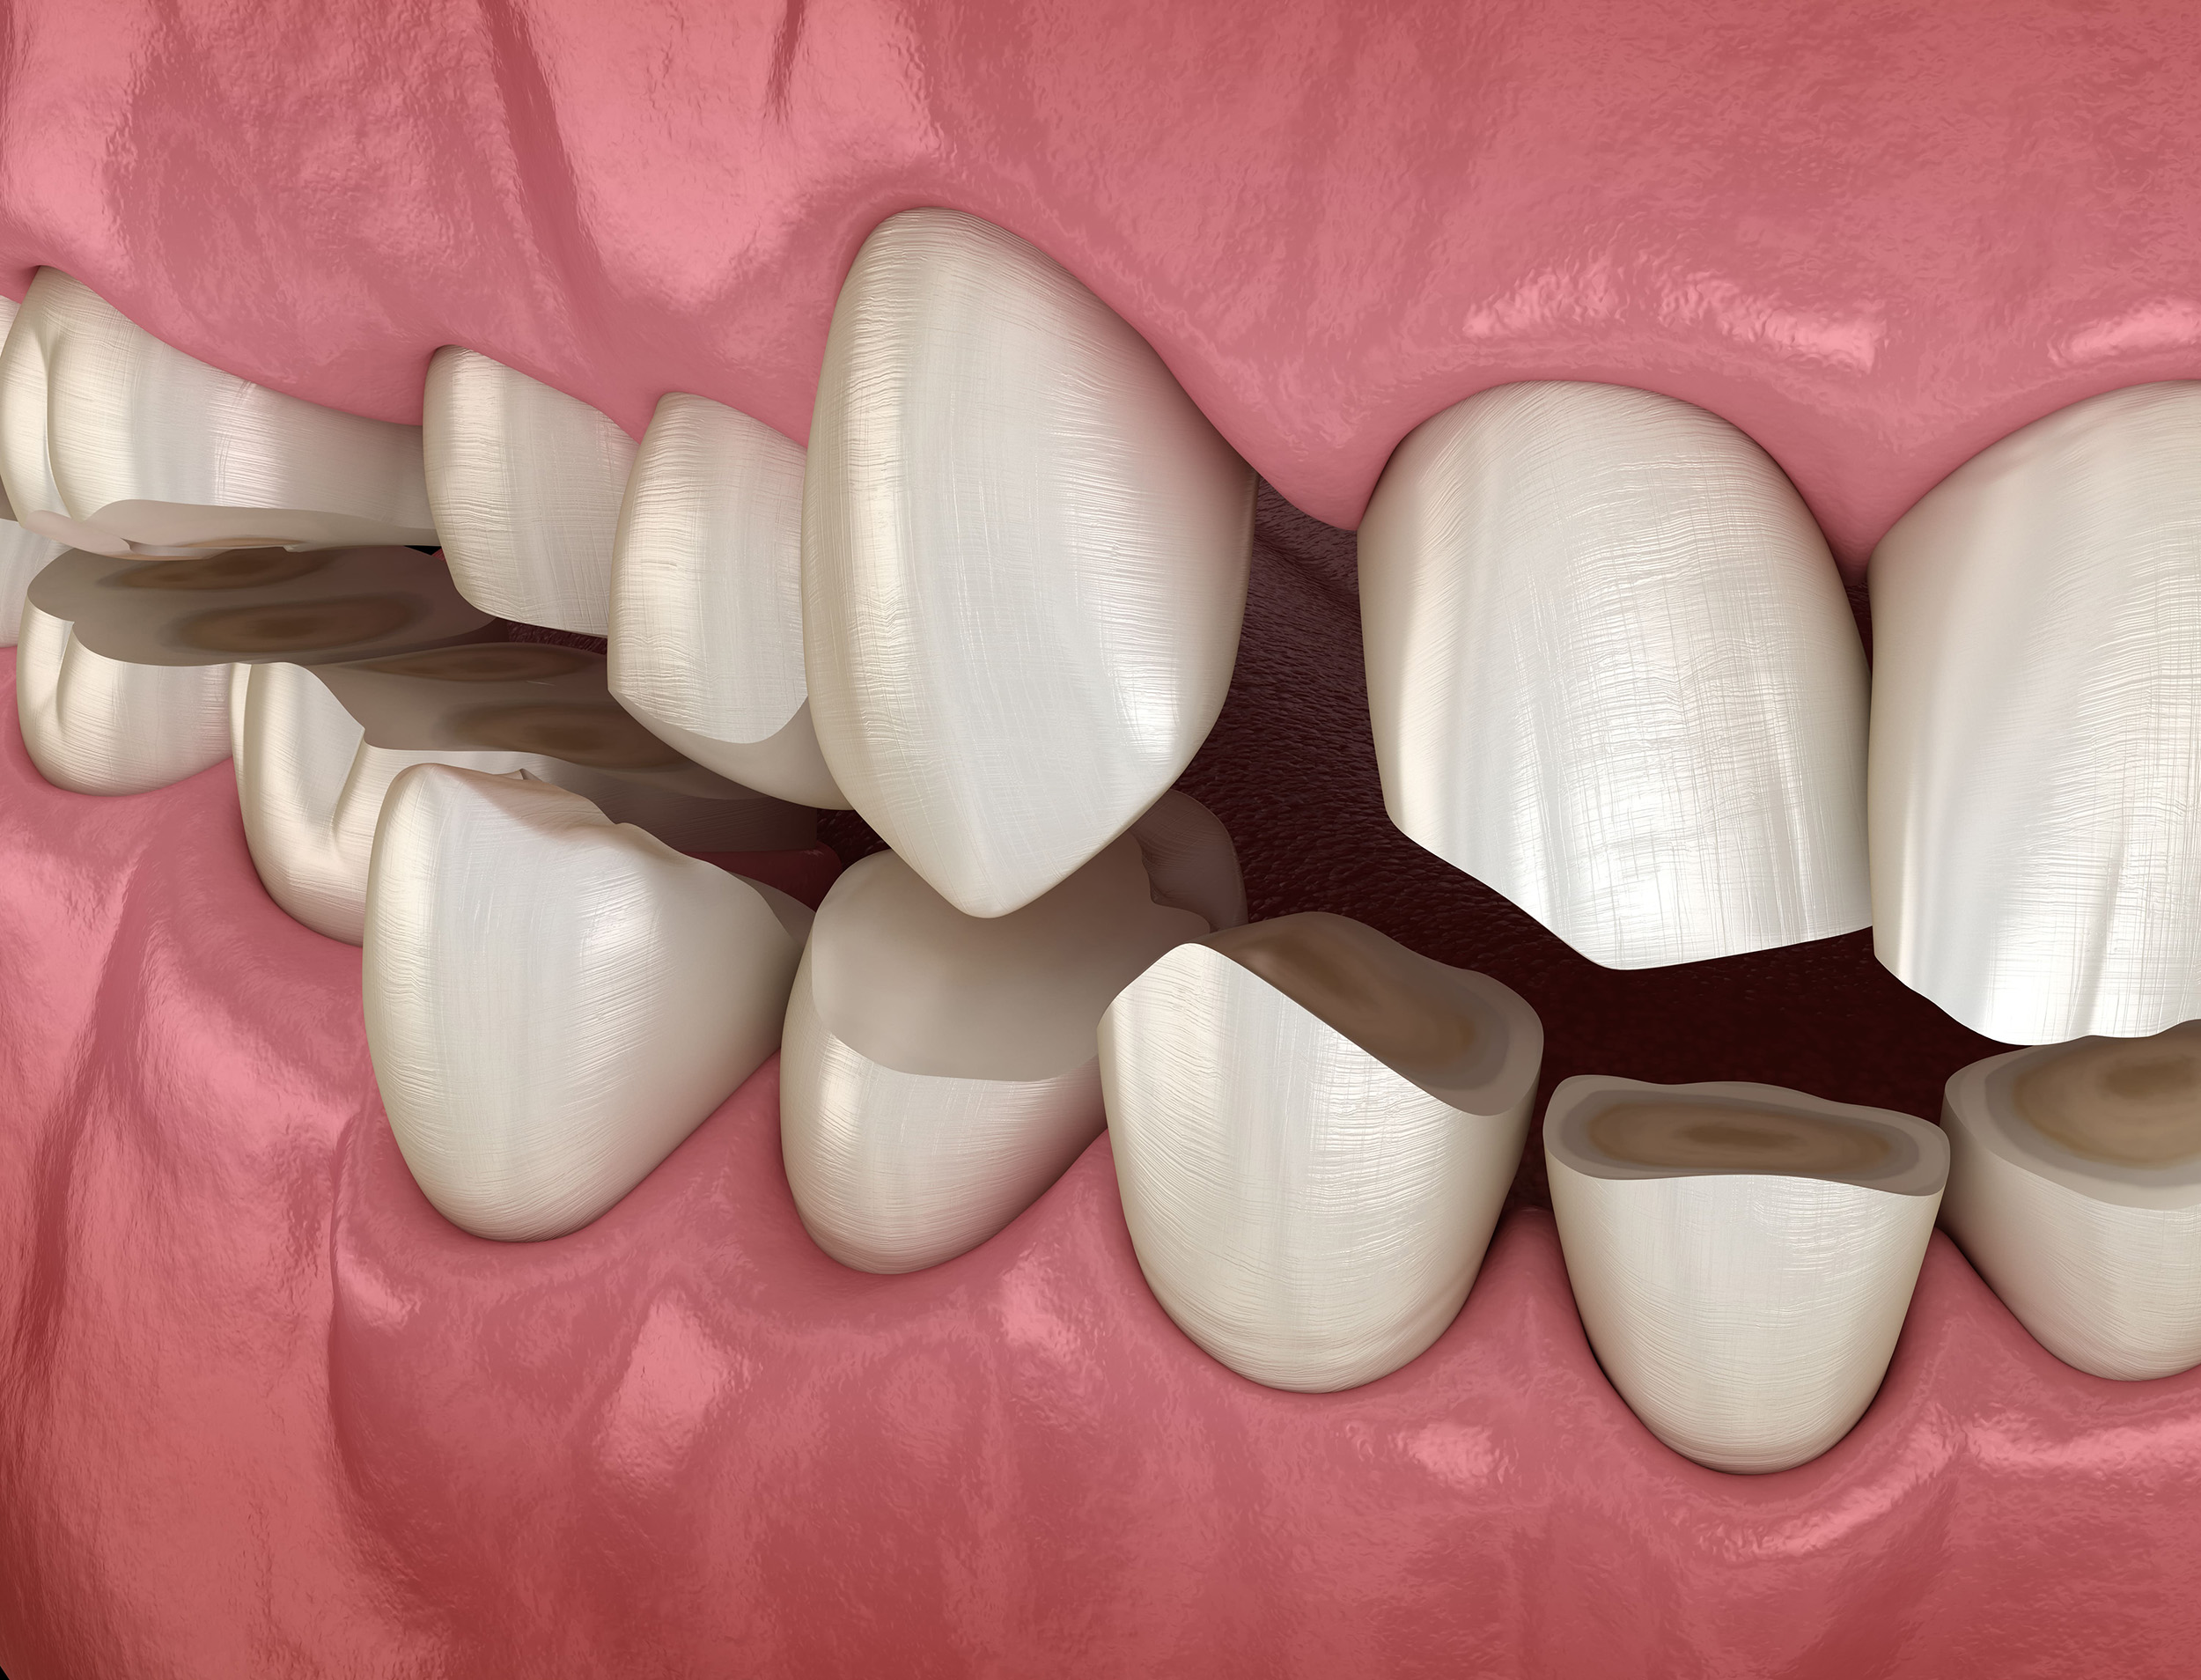 Las férulas de retención de ortodoncia, ¿me sirven como placa de descarga?